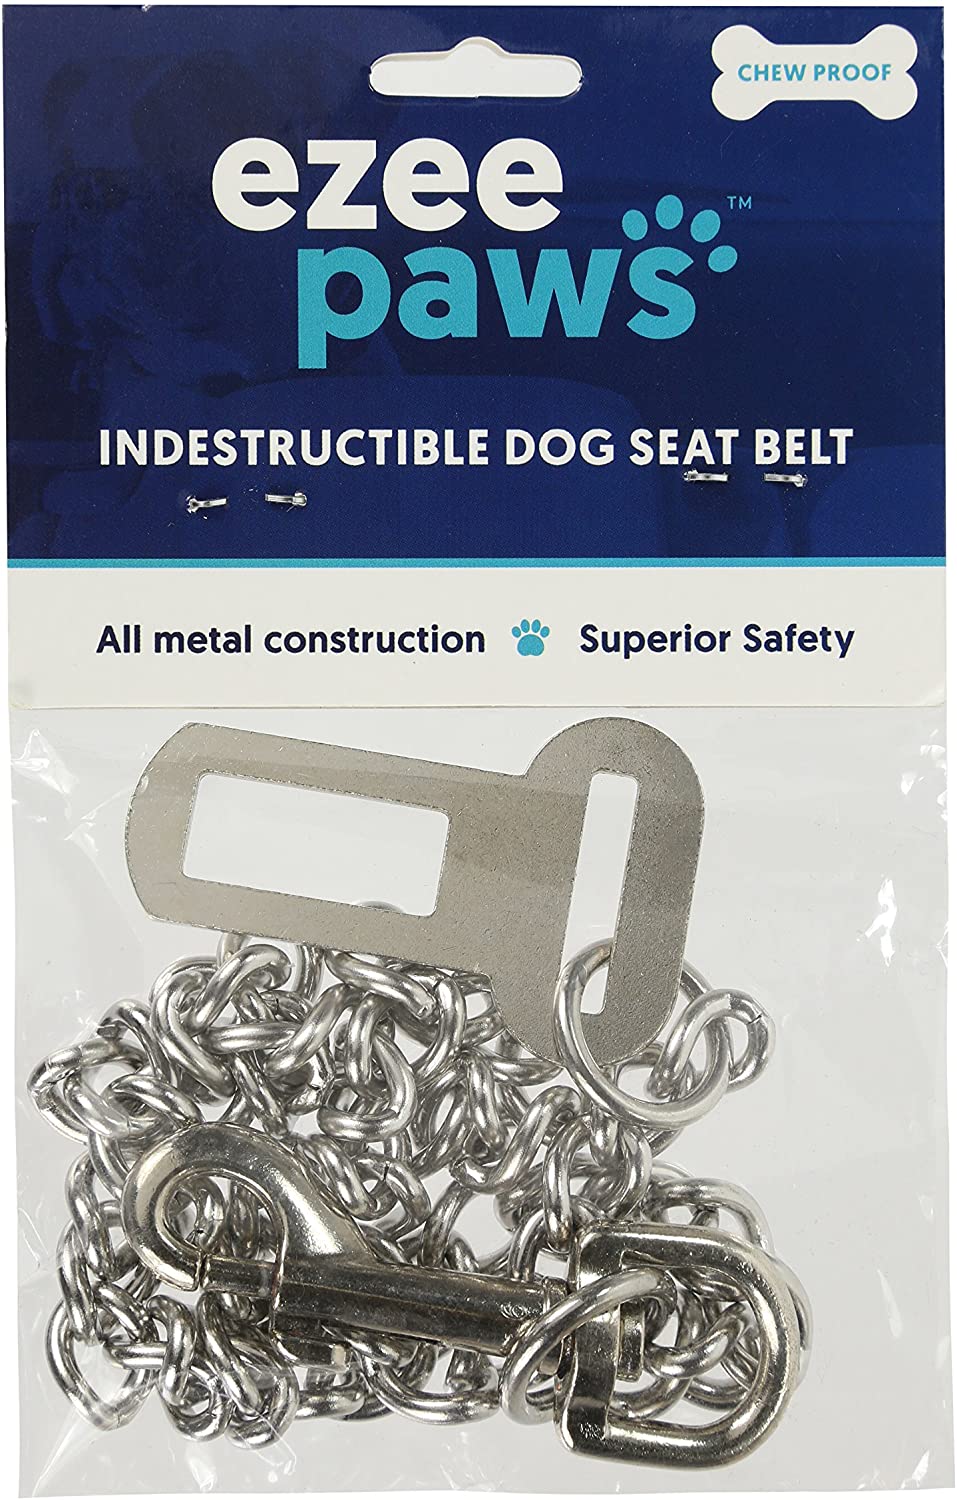  Ezee Paws - Cinturón de Seguridad para Perro (65 cm) 